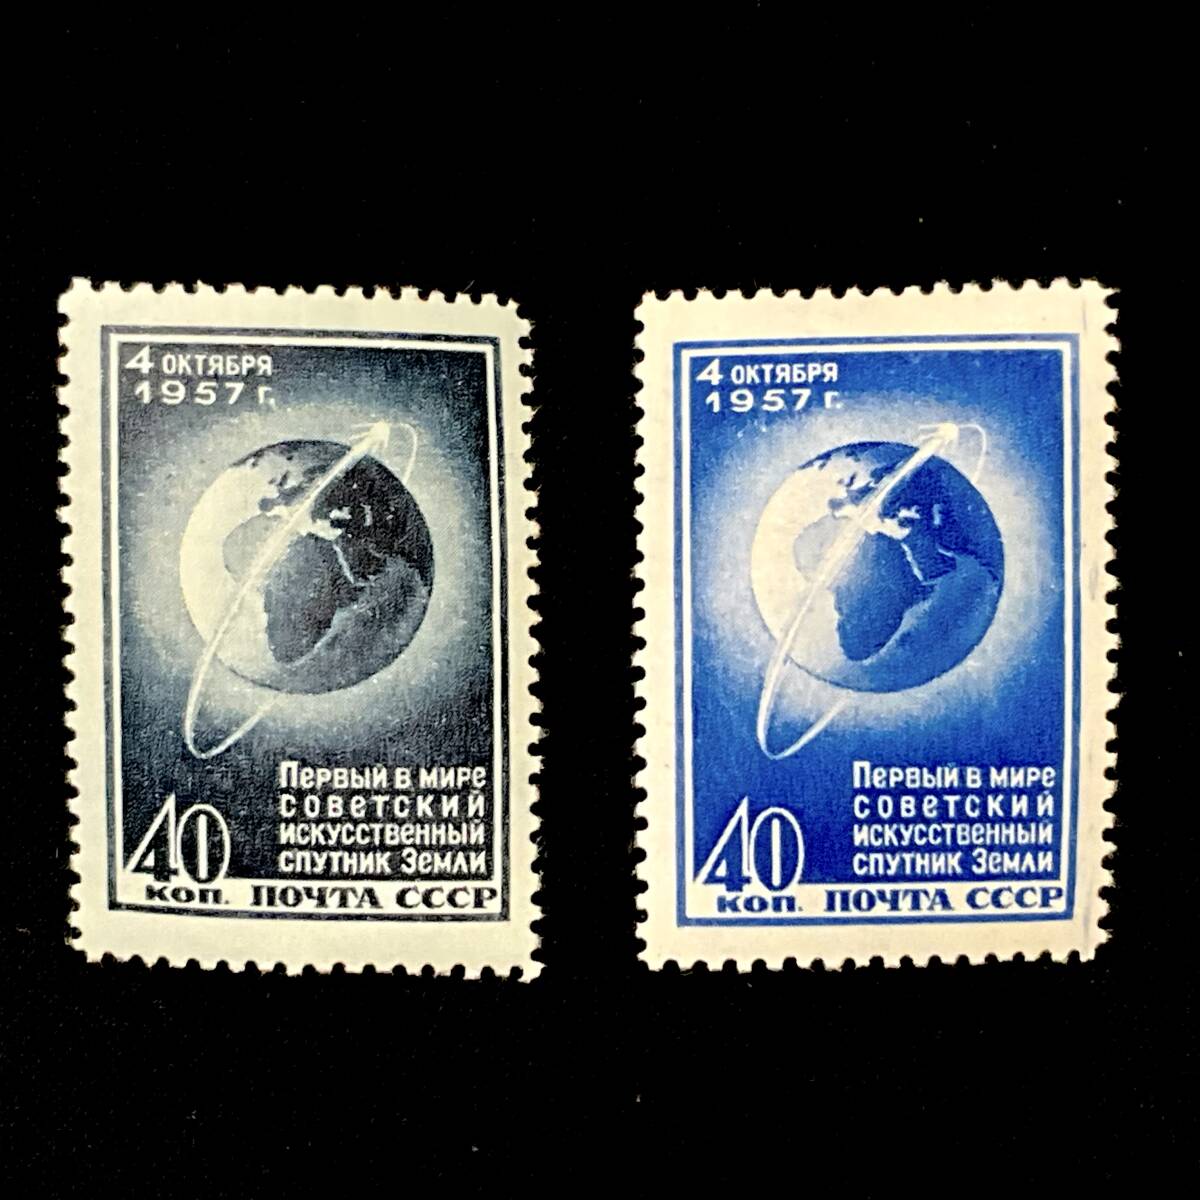 ソビエト社会主義共和国連邦発行「初の人工衛星」CCCP １９５７年発行 未使用切手_画像1